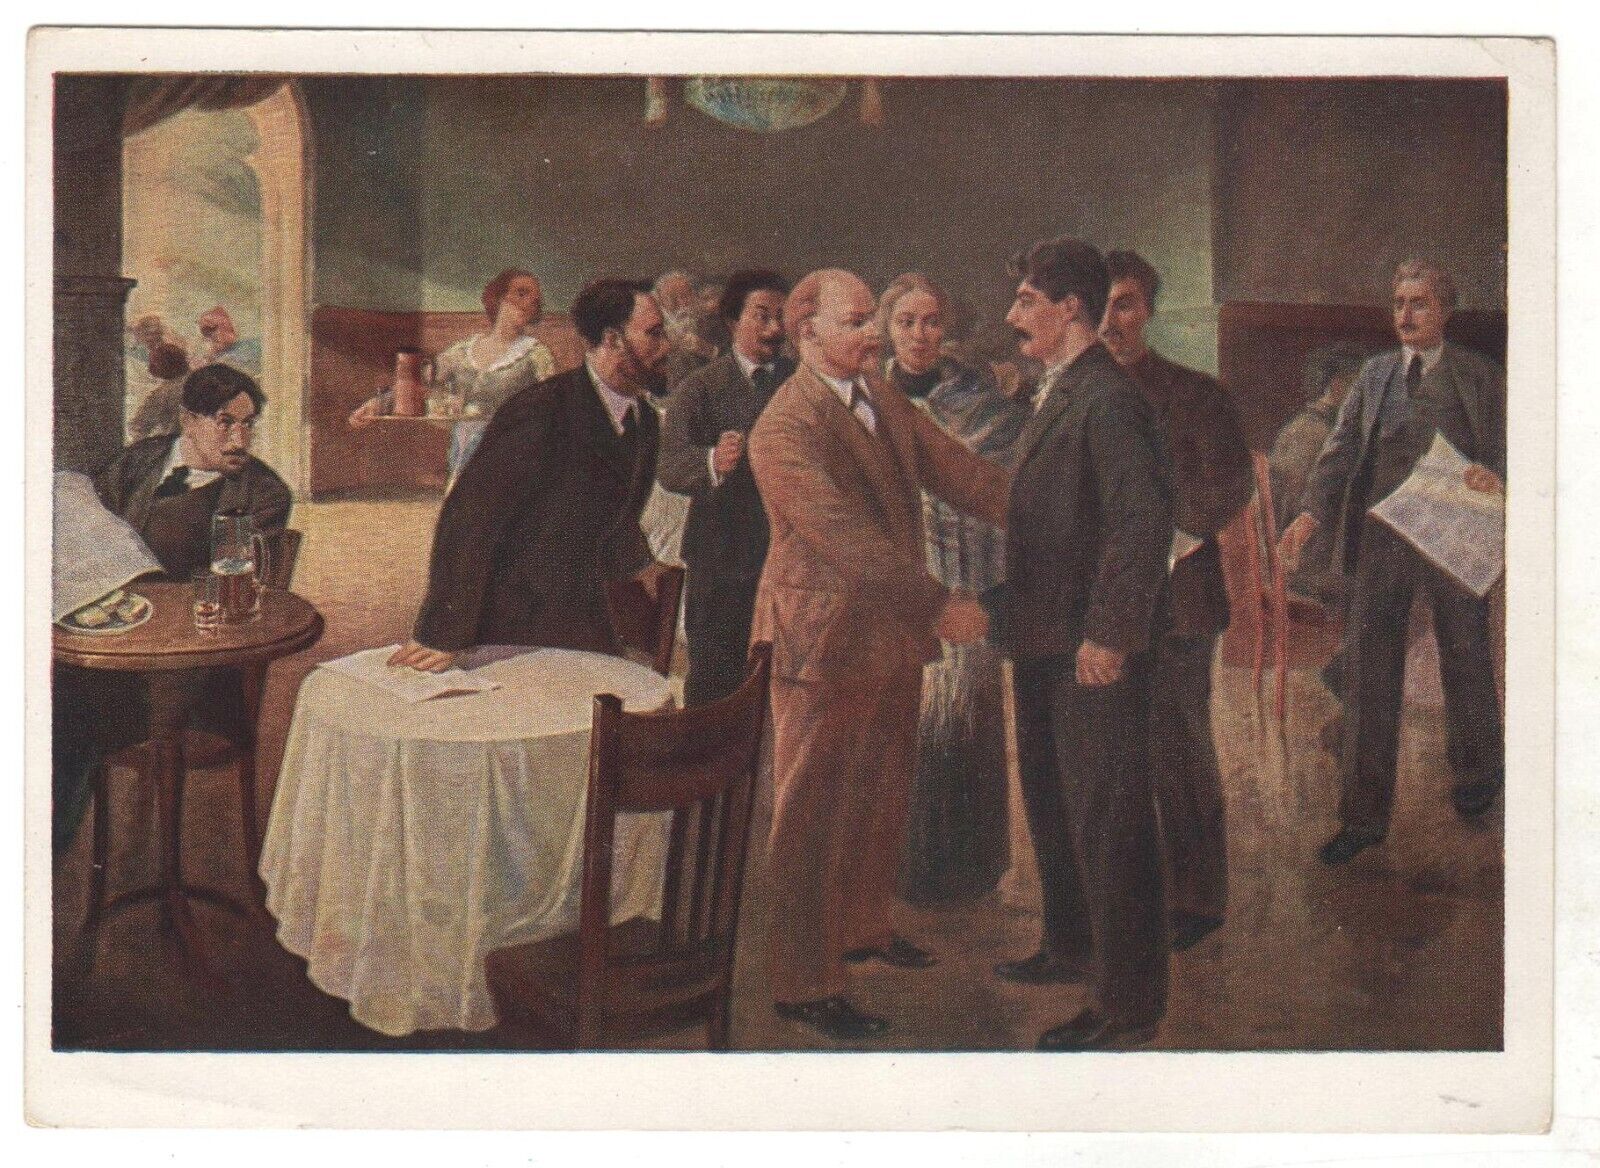 1941 RARE Meeting STALIN LENIN Communist Propaganda OLD Soviet Russian Postcard